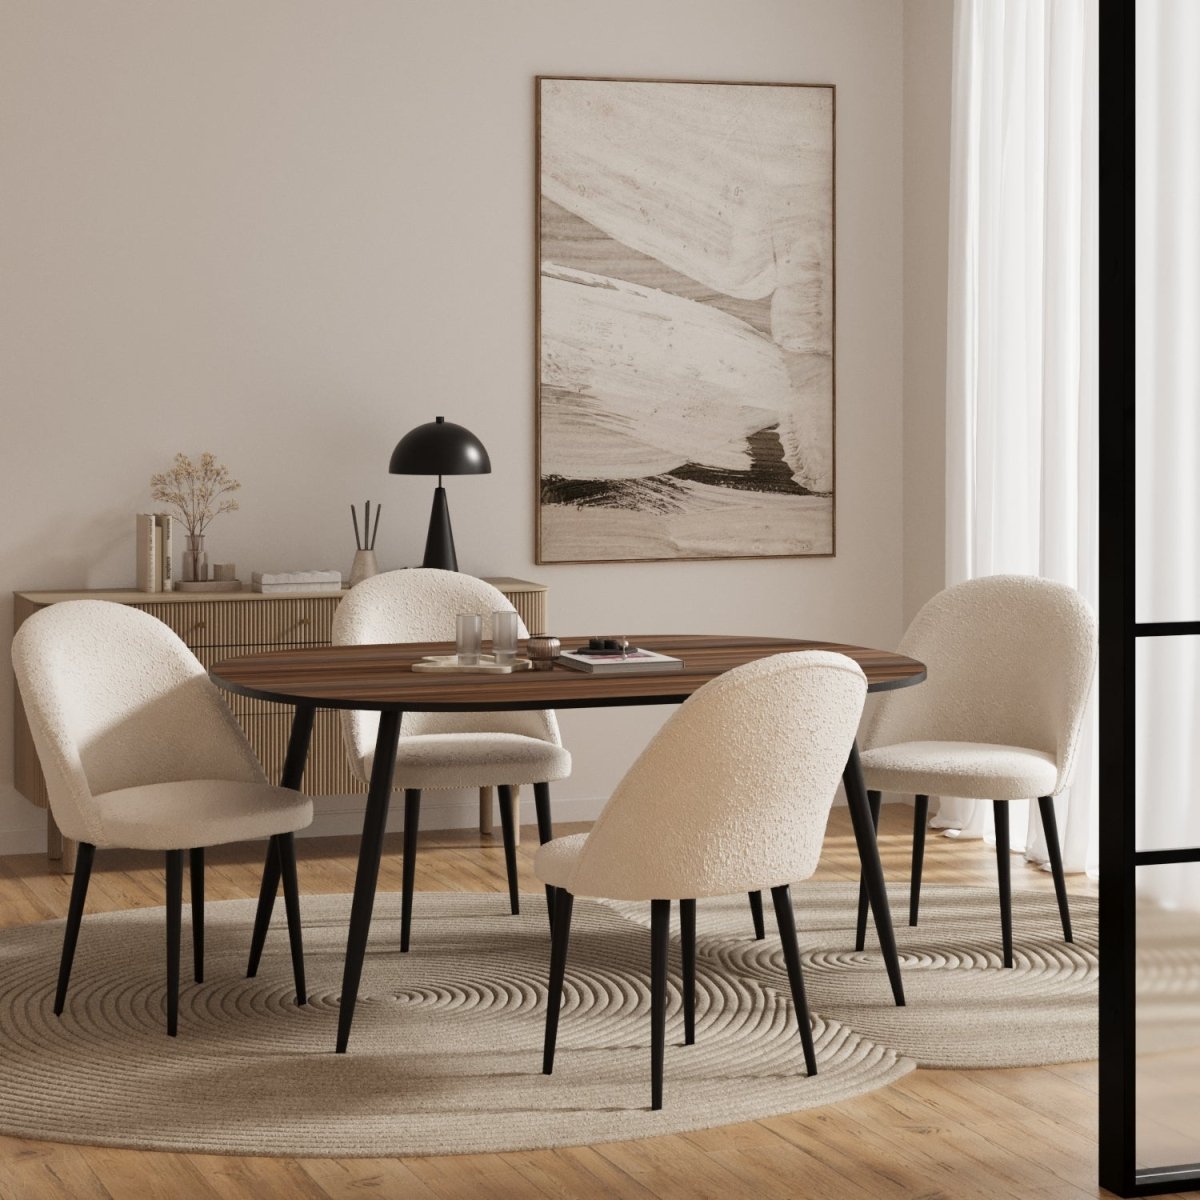 Chaise de salle à manger design scandinave vintage - Potiron Paris, la déco des intérieurs hauts en couleurs